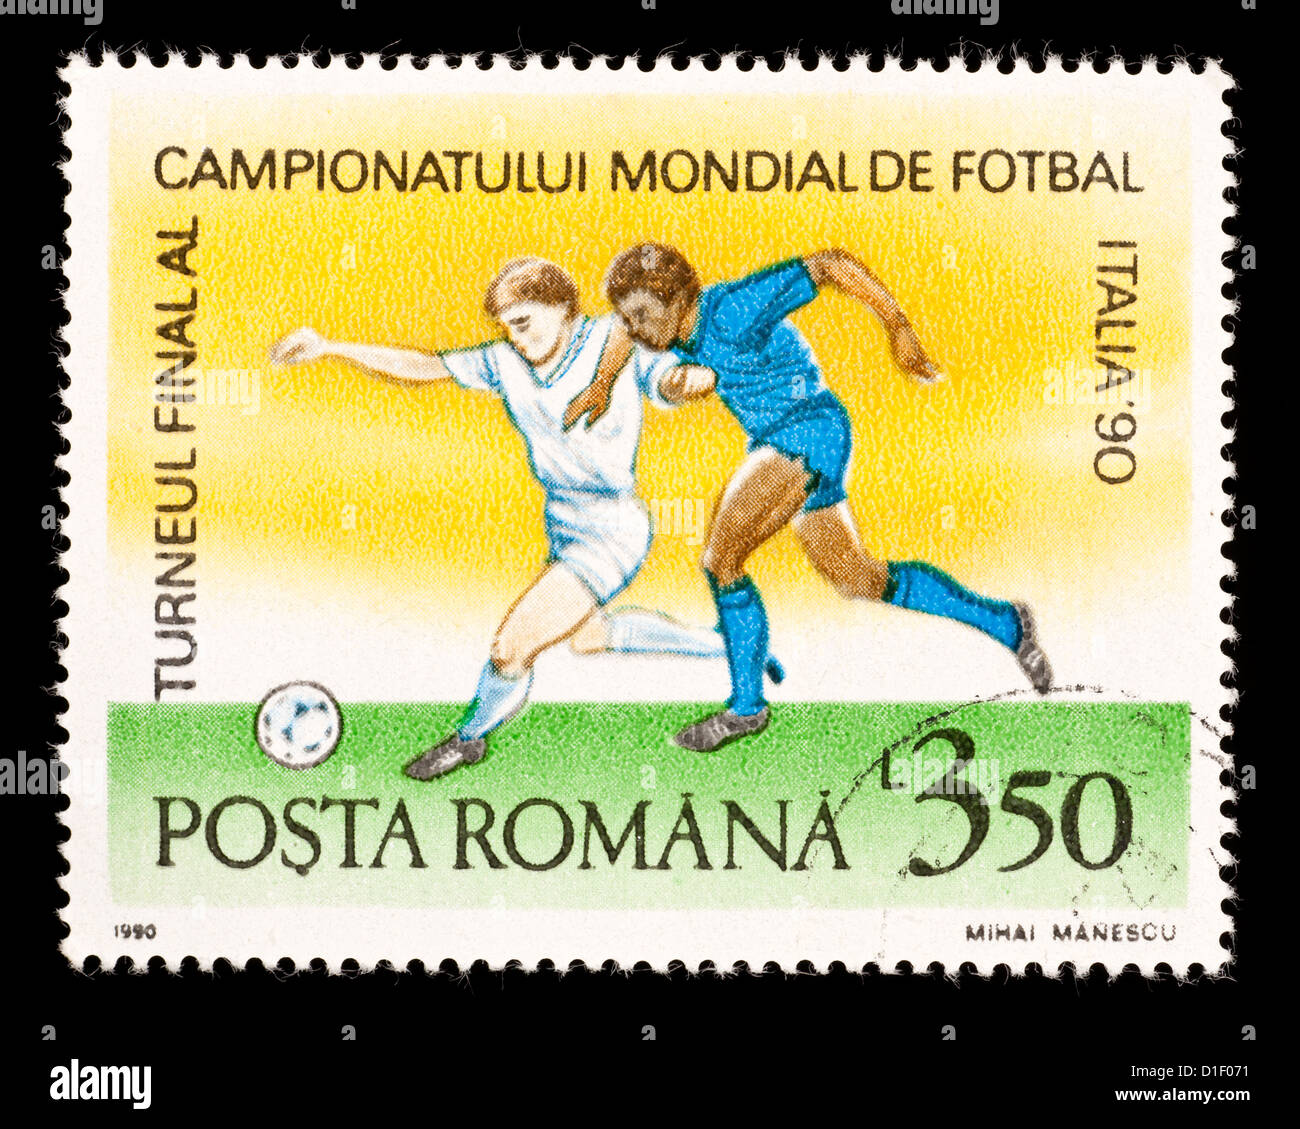 Timbre-poste de Roumanie représentant des joueurs de football, émis pour la Coupe du Monde de Football 1990. Banque D'Images